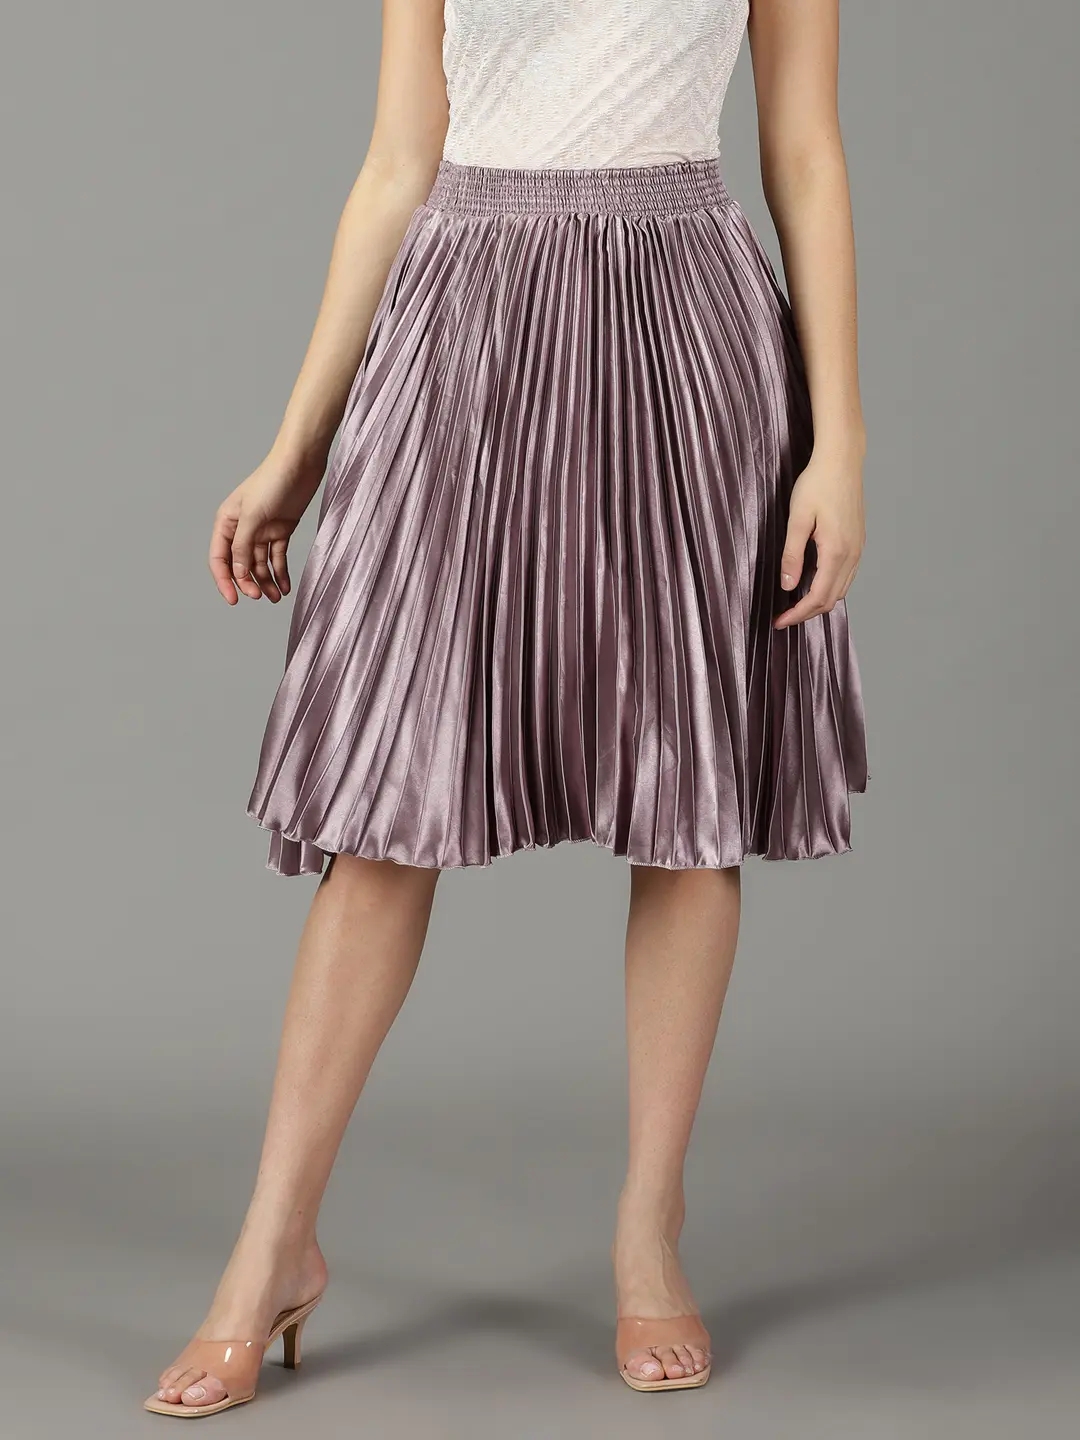 SHOWOFF Women's Solid Violet Satin Flared Skirt